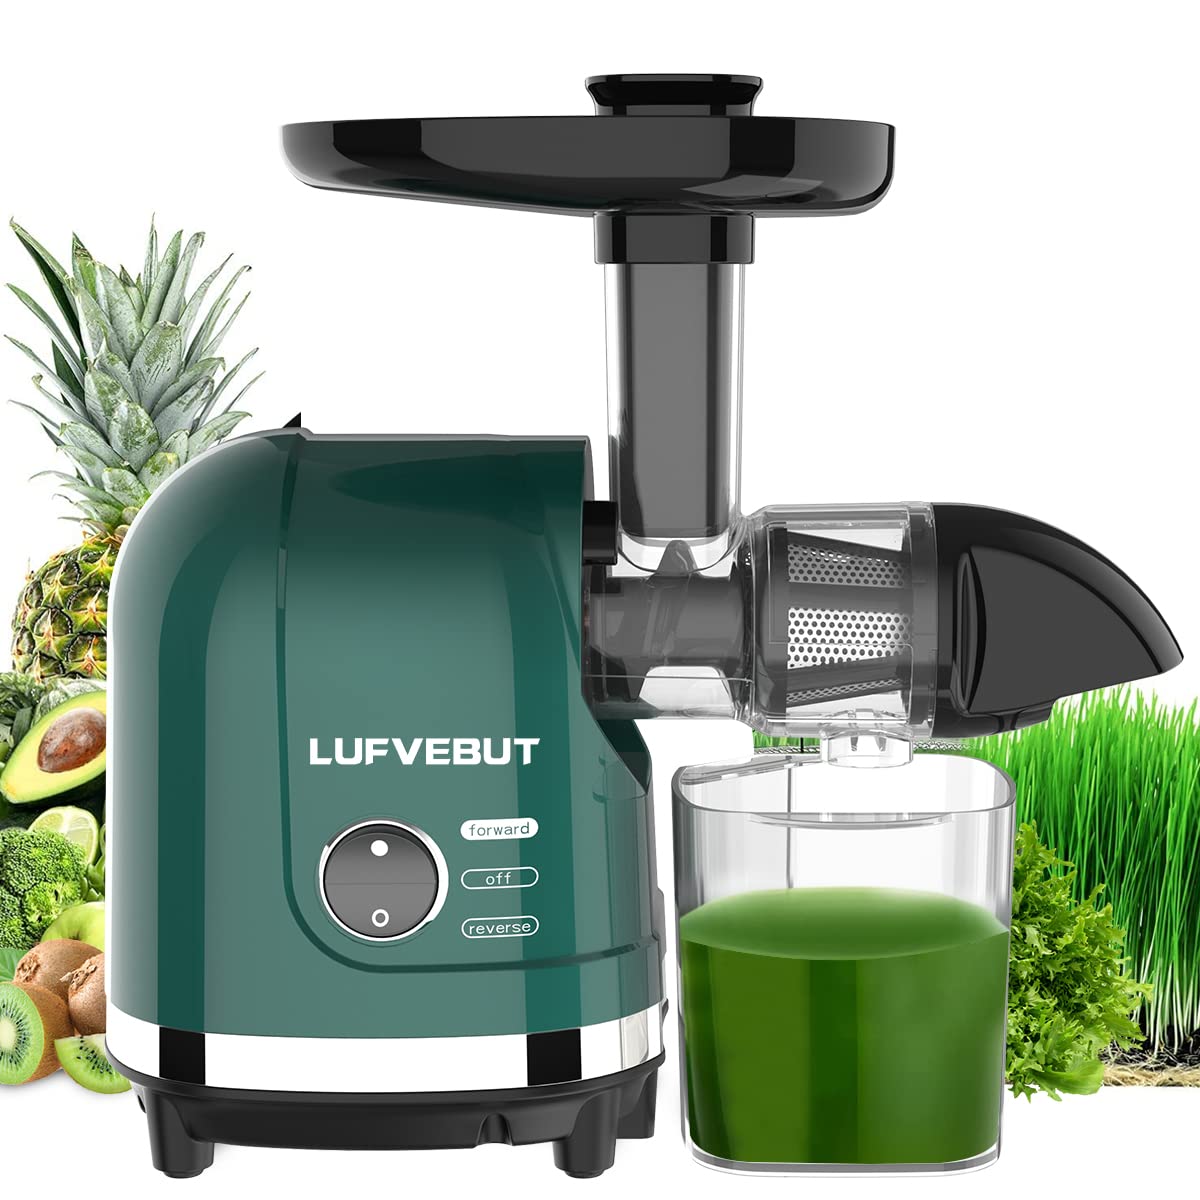 LUFVEBUT Vegetable Juicer